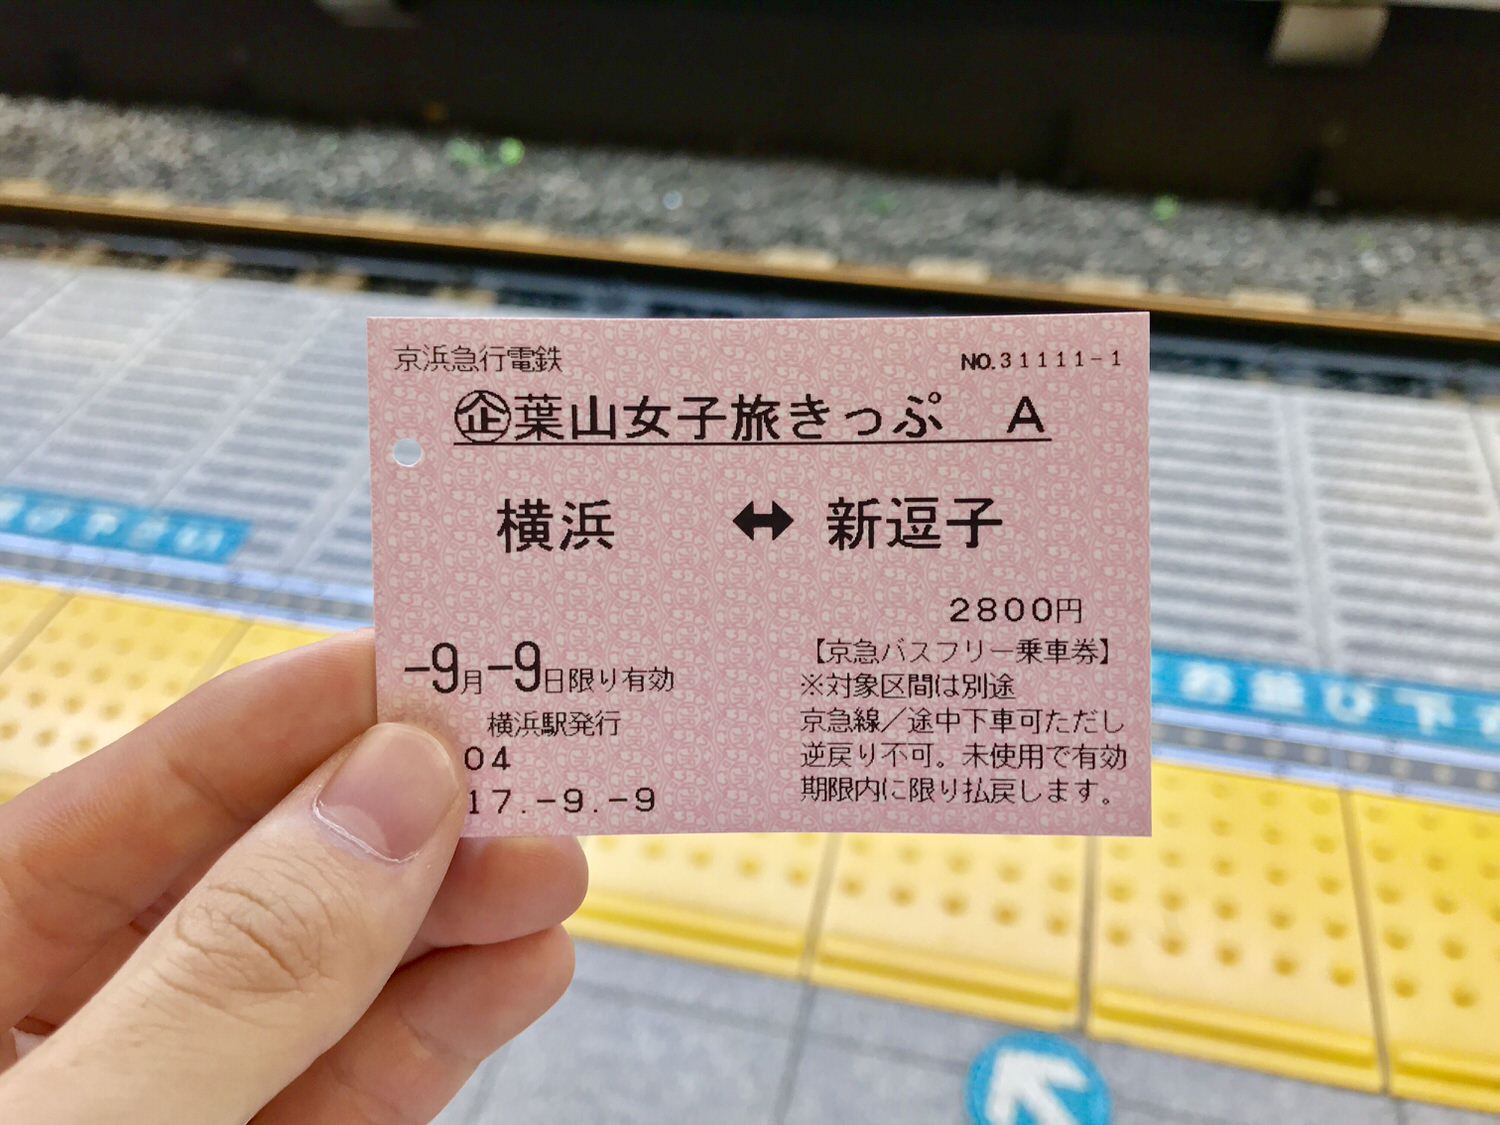 君は 葉山女子旅きっぷ を知ってるか 往復切符とバス乗り放題とお昼と土産込みで3000円は最強